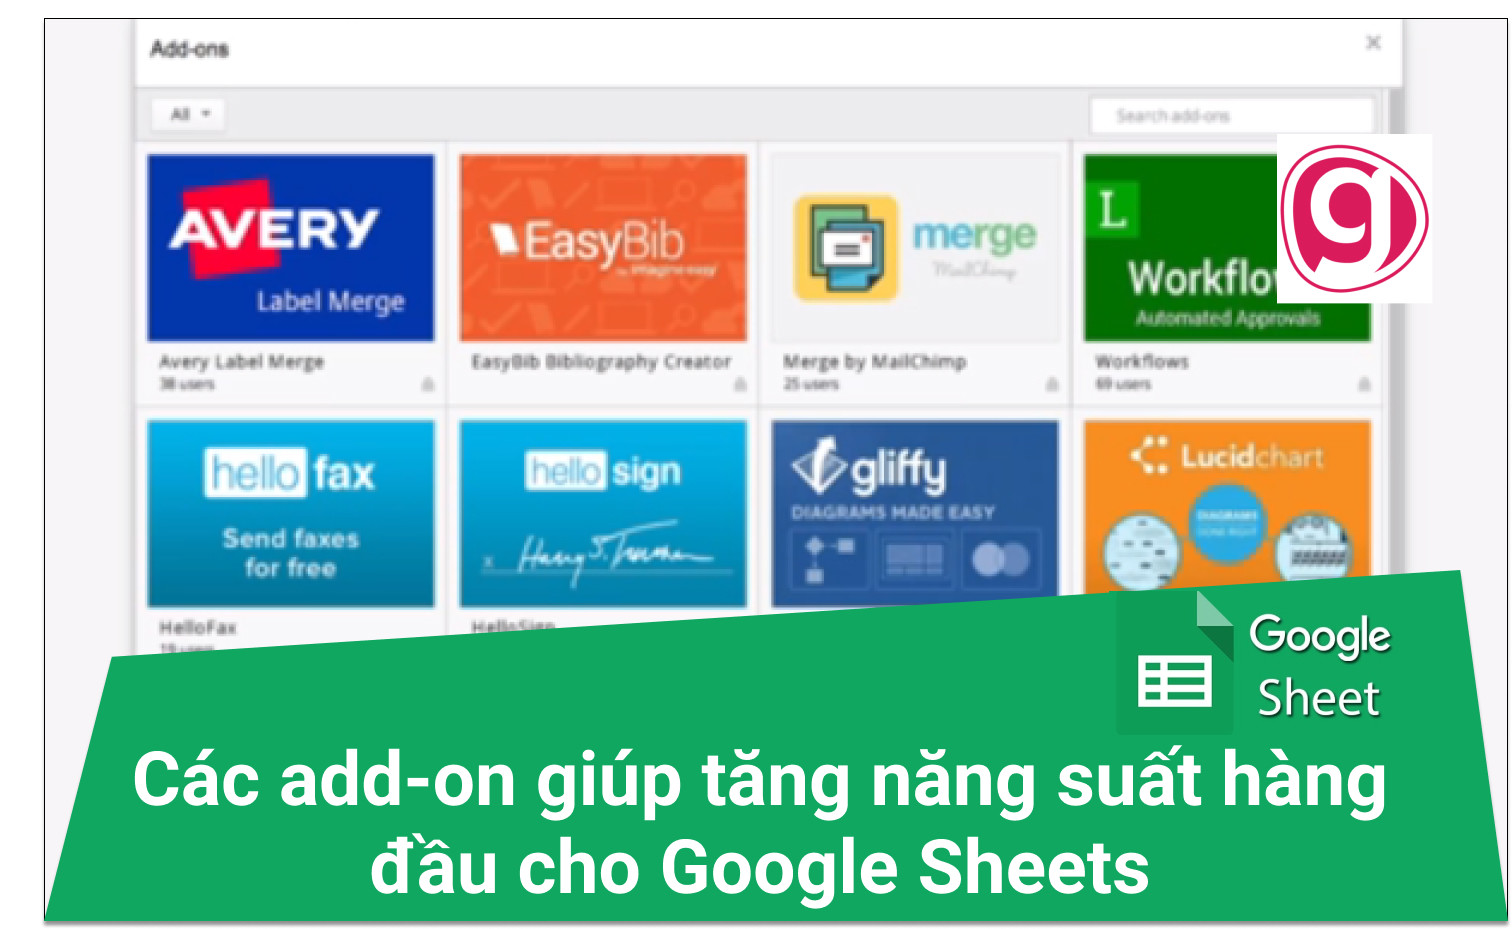 Các tiện ích bổ sung (add-on) giúp tăng năng suất cho Google Sheets